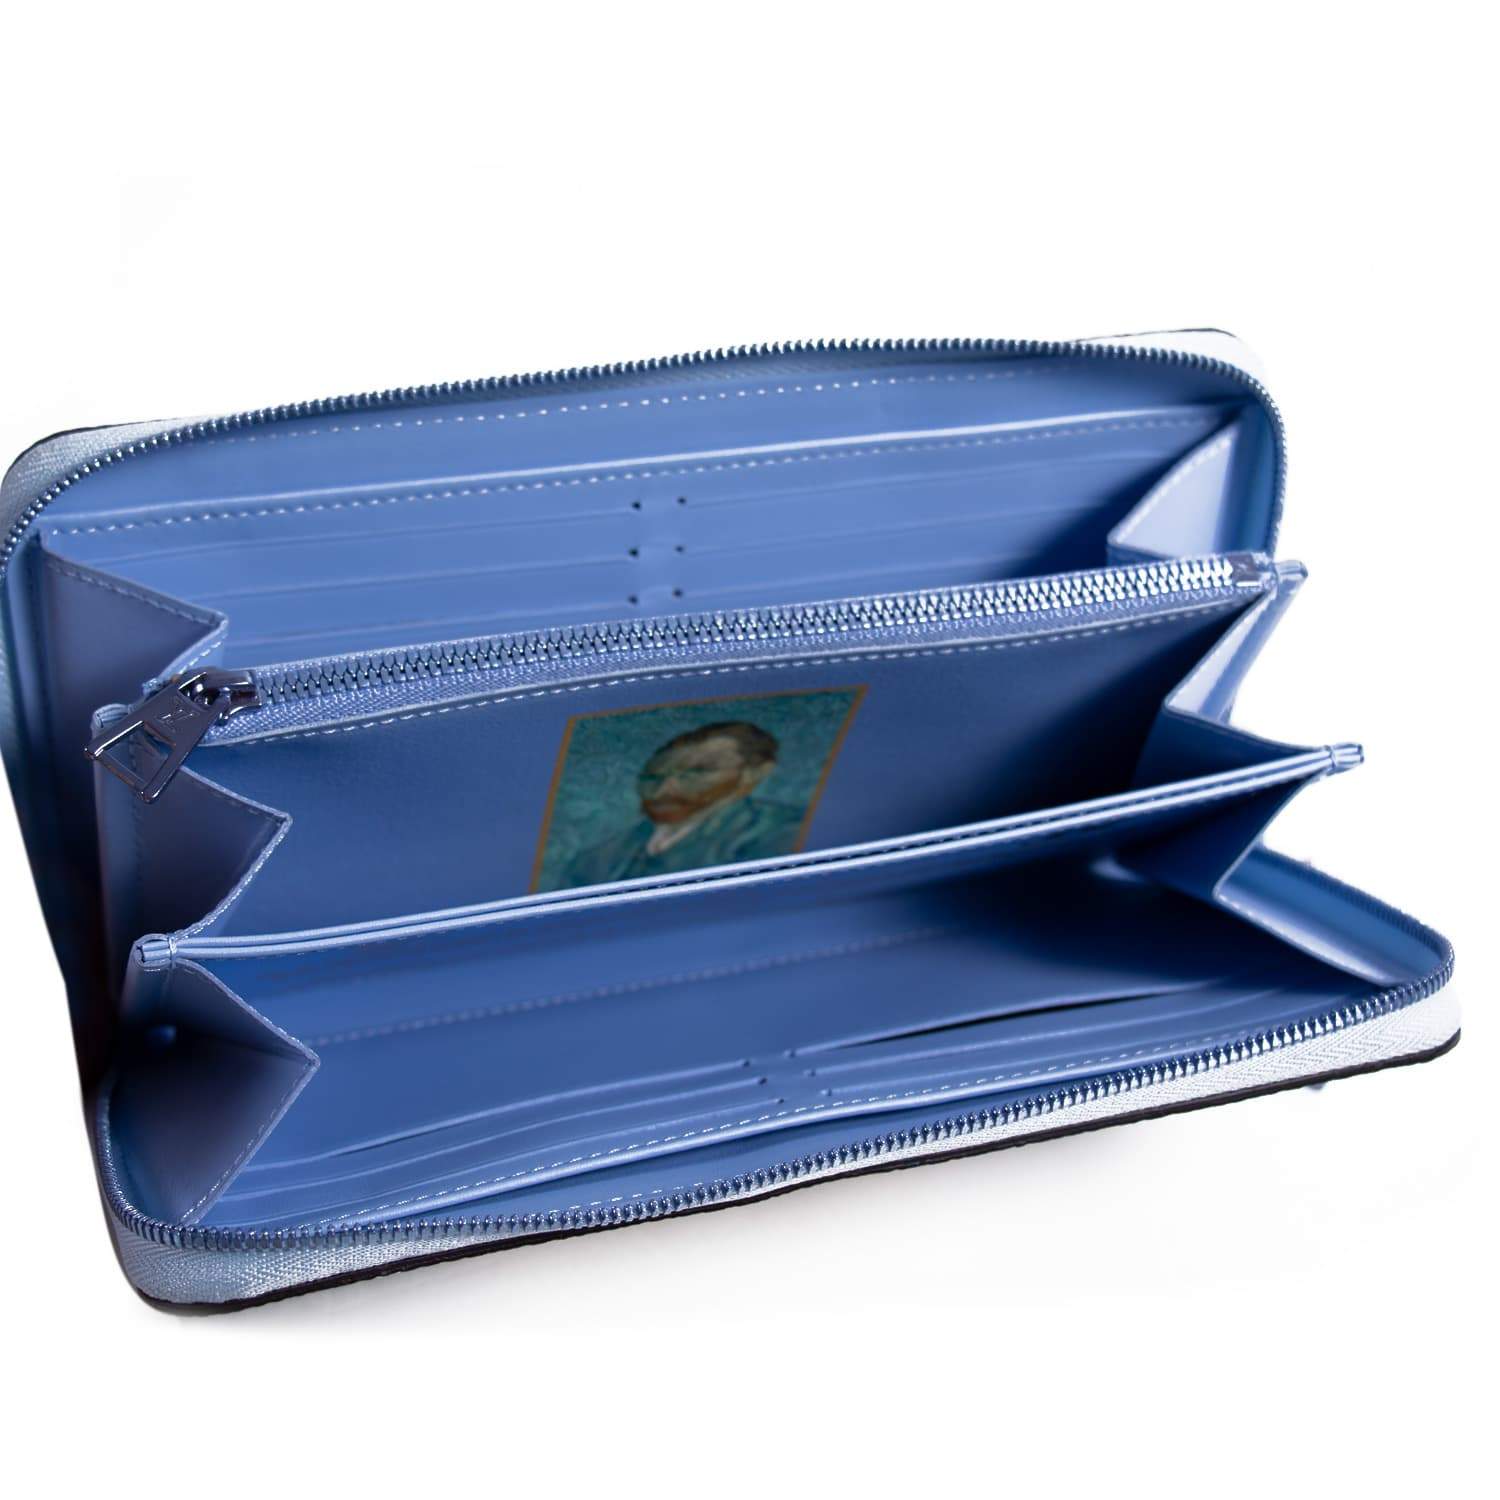 Louis Vuitton Jeff Koons Van Gogh Speedy Bag | N-Cash